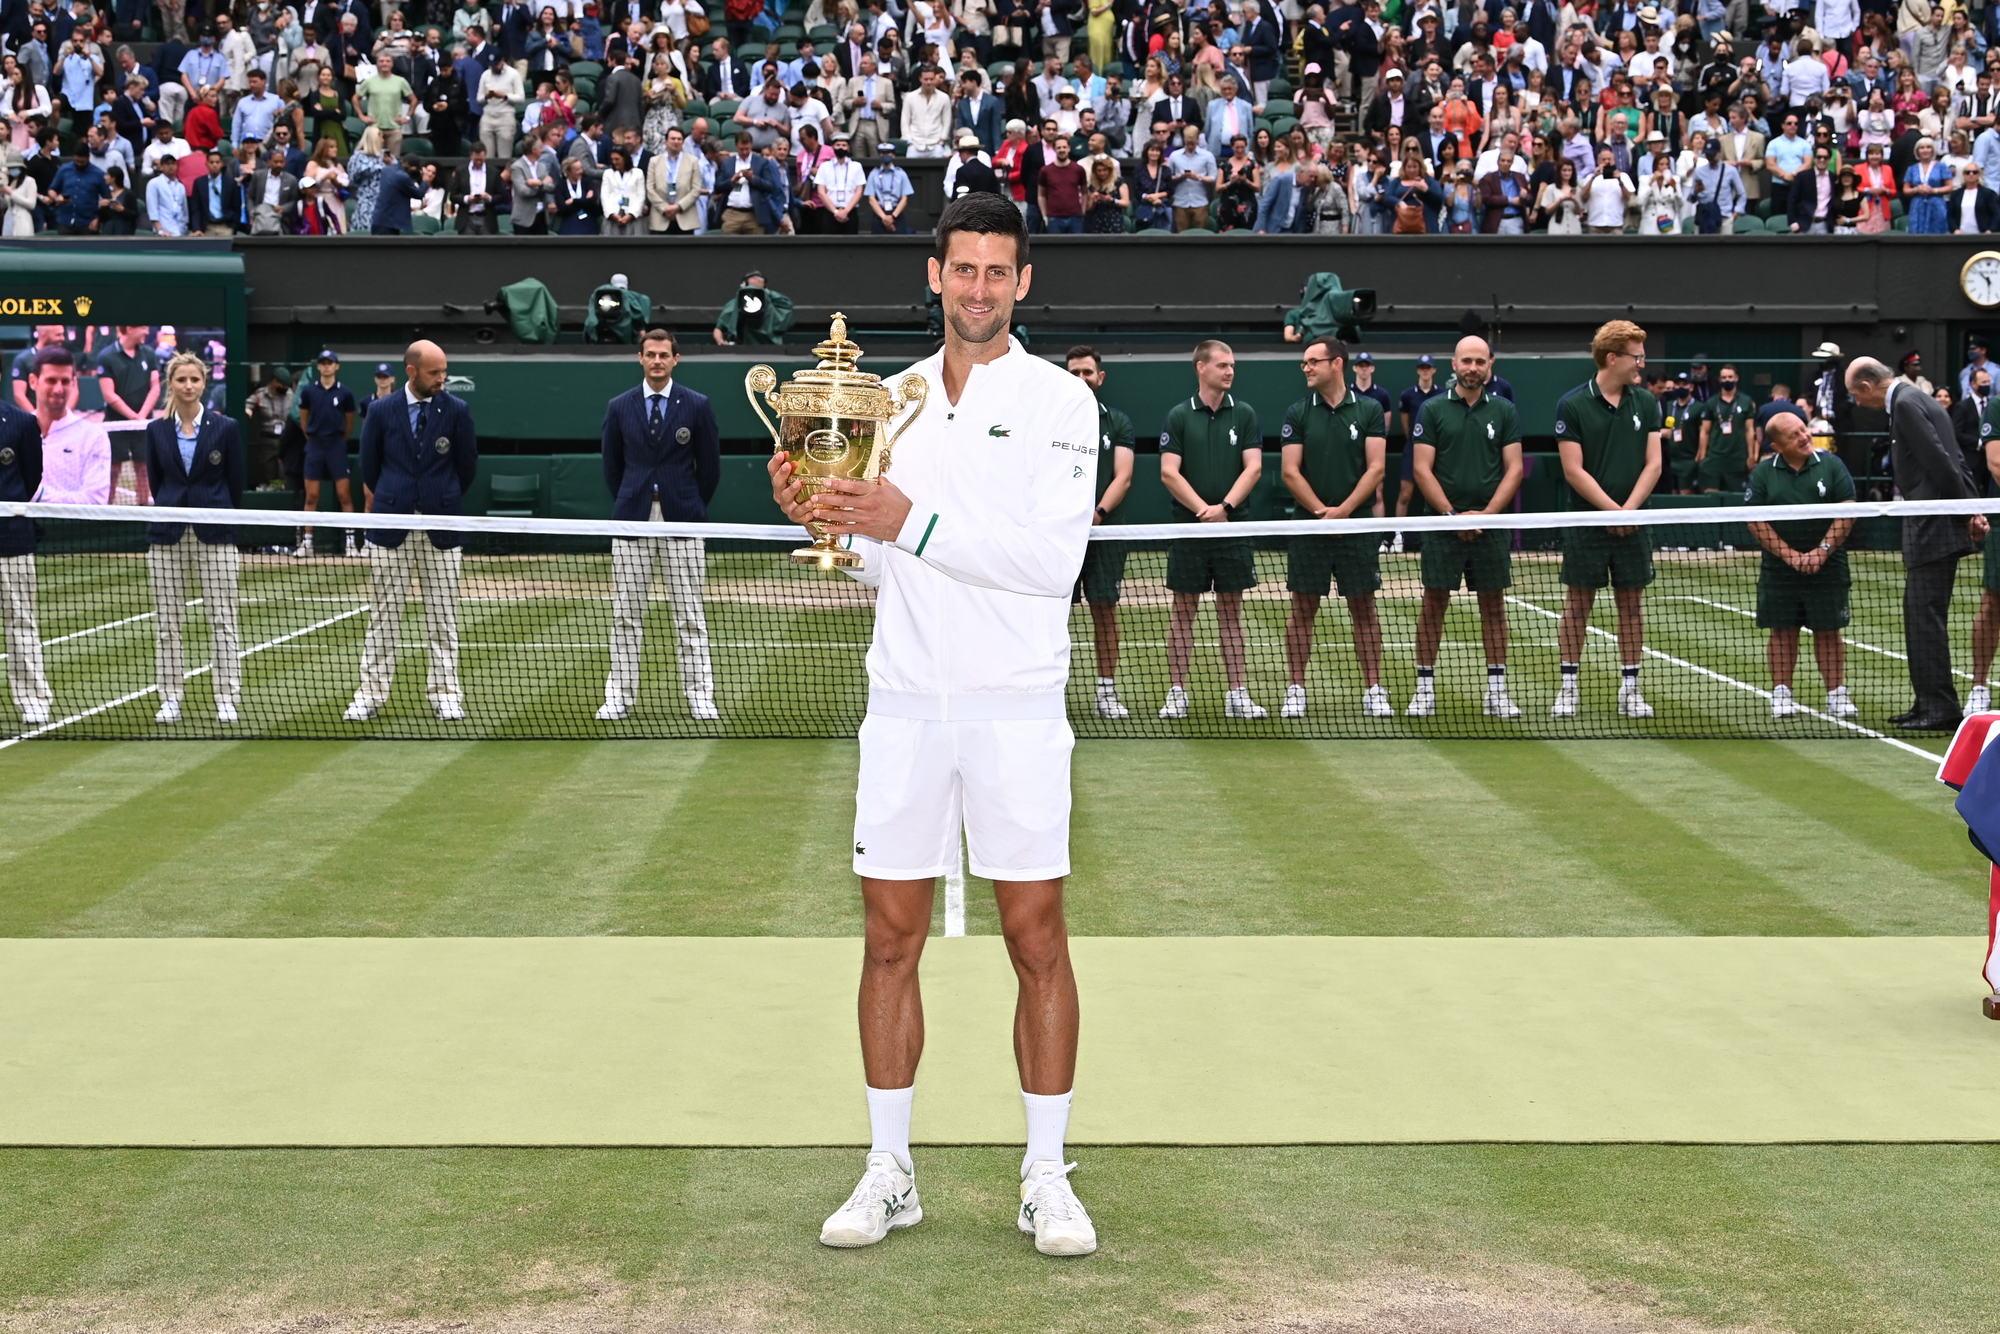 Djokovic bate Nadal pela quinta vez e é campeão em Wimbledon